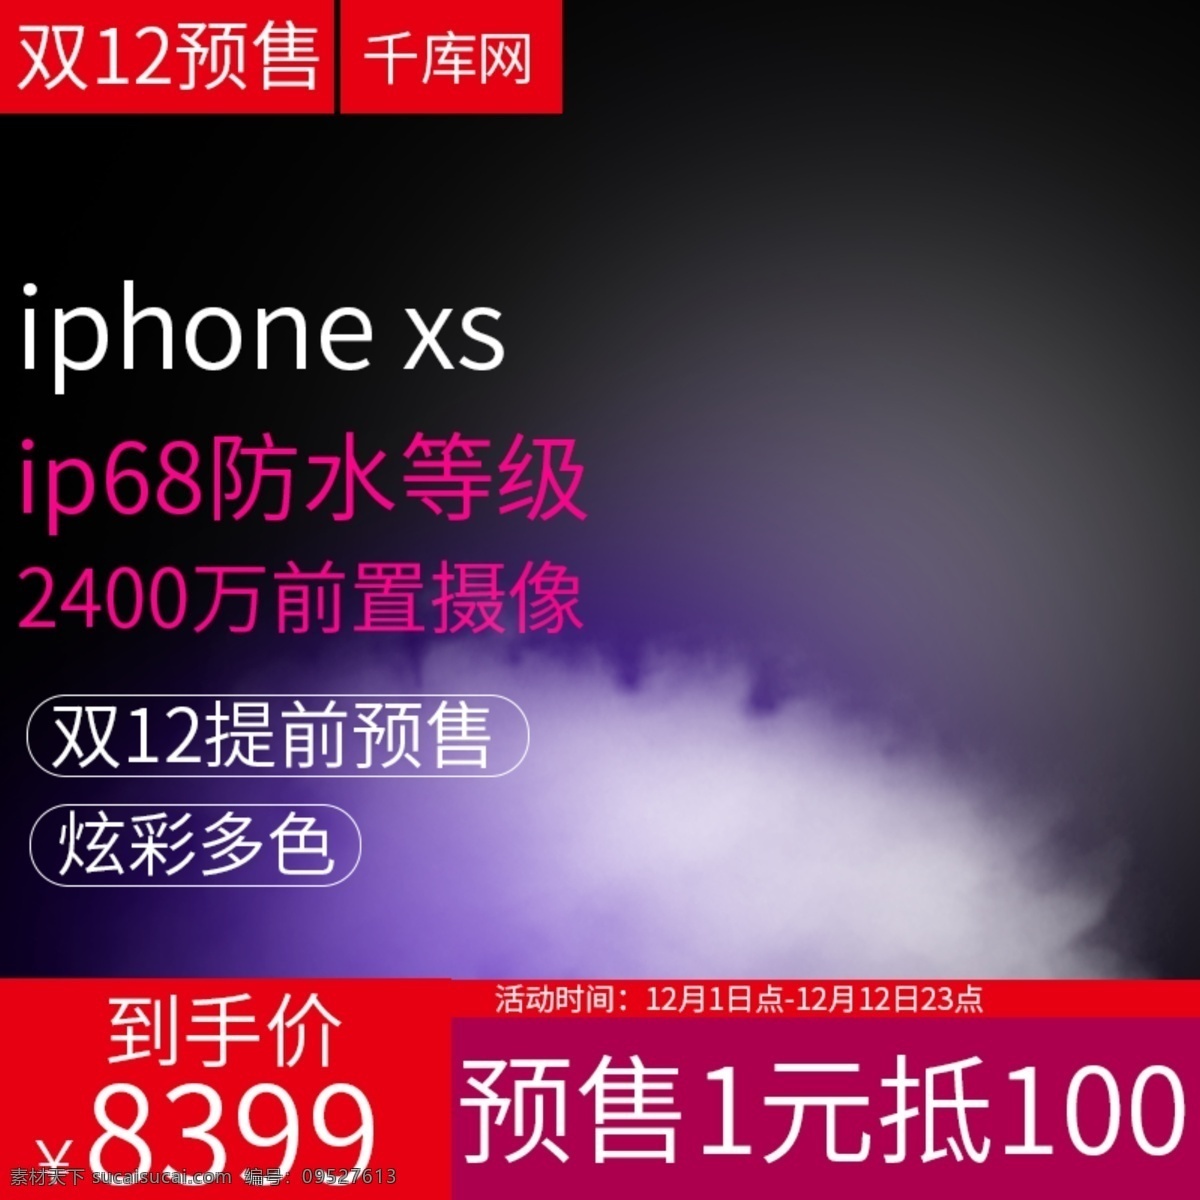 手机 双十 二 预售 主 图 直通车 电商 促销 双十二 iphonexs 主图 千库原创